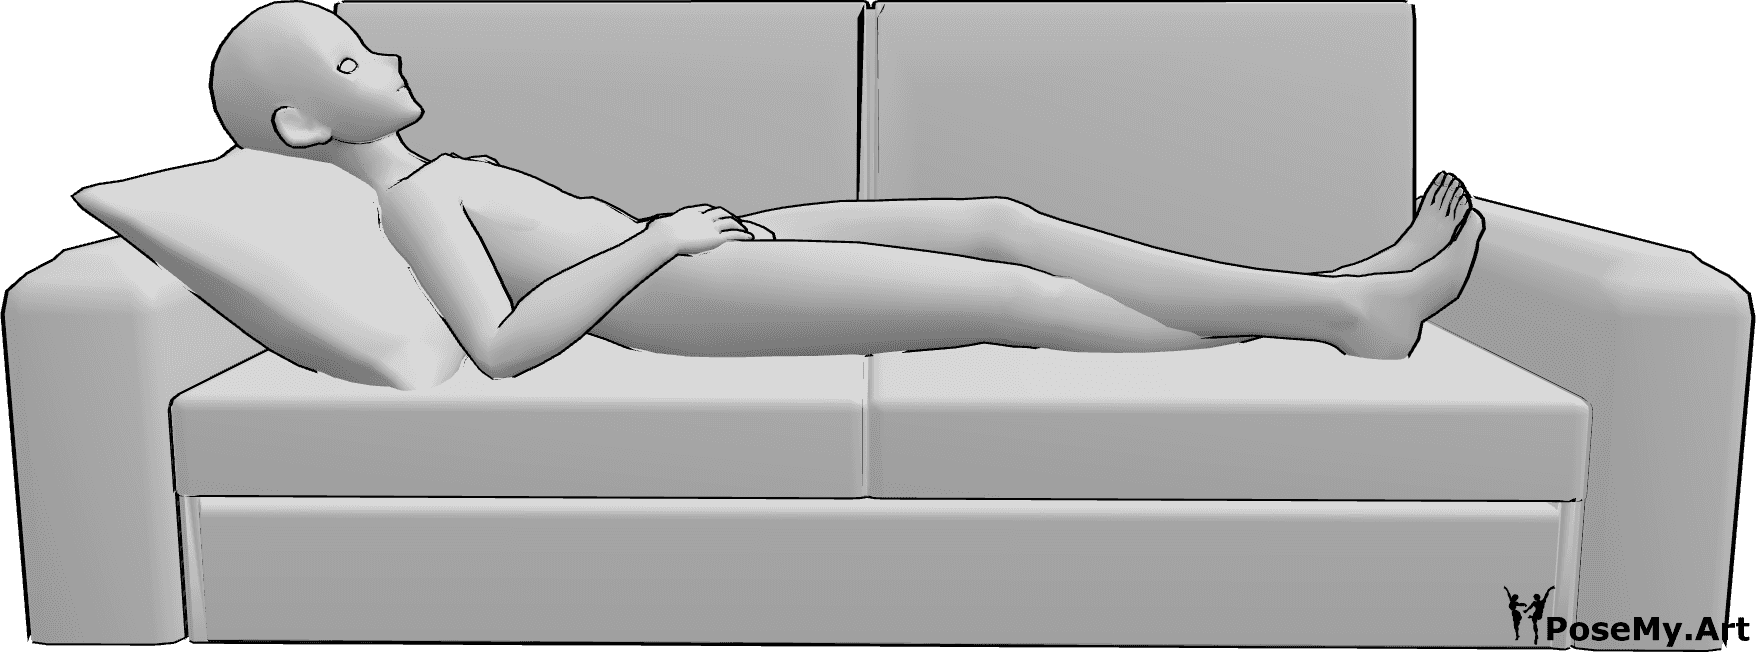 Posen-Referenz- Anime männliche liegende Pose - Anime-Männchen liegt bequem auf der Couch, hat die Beine gekreuzt und schaut nach oben